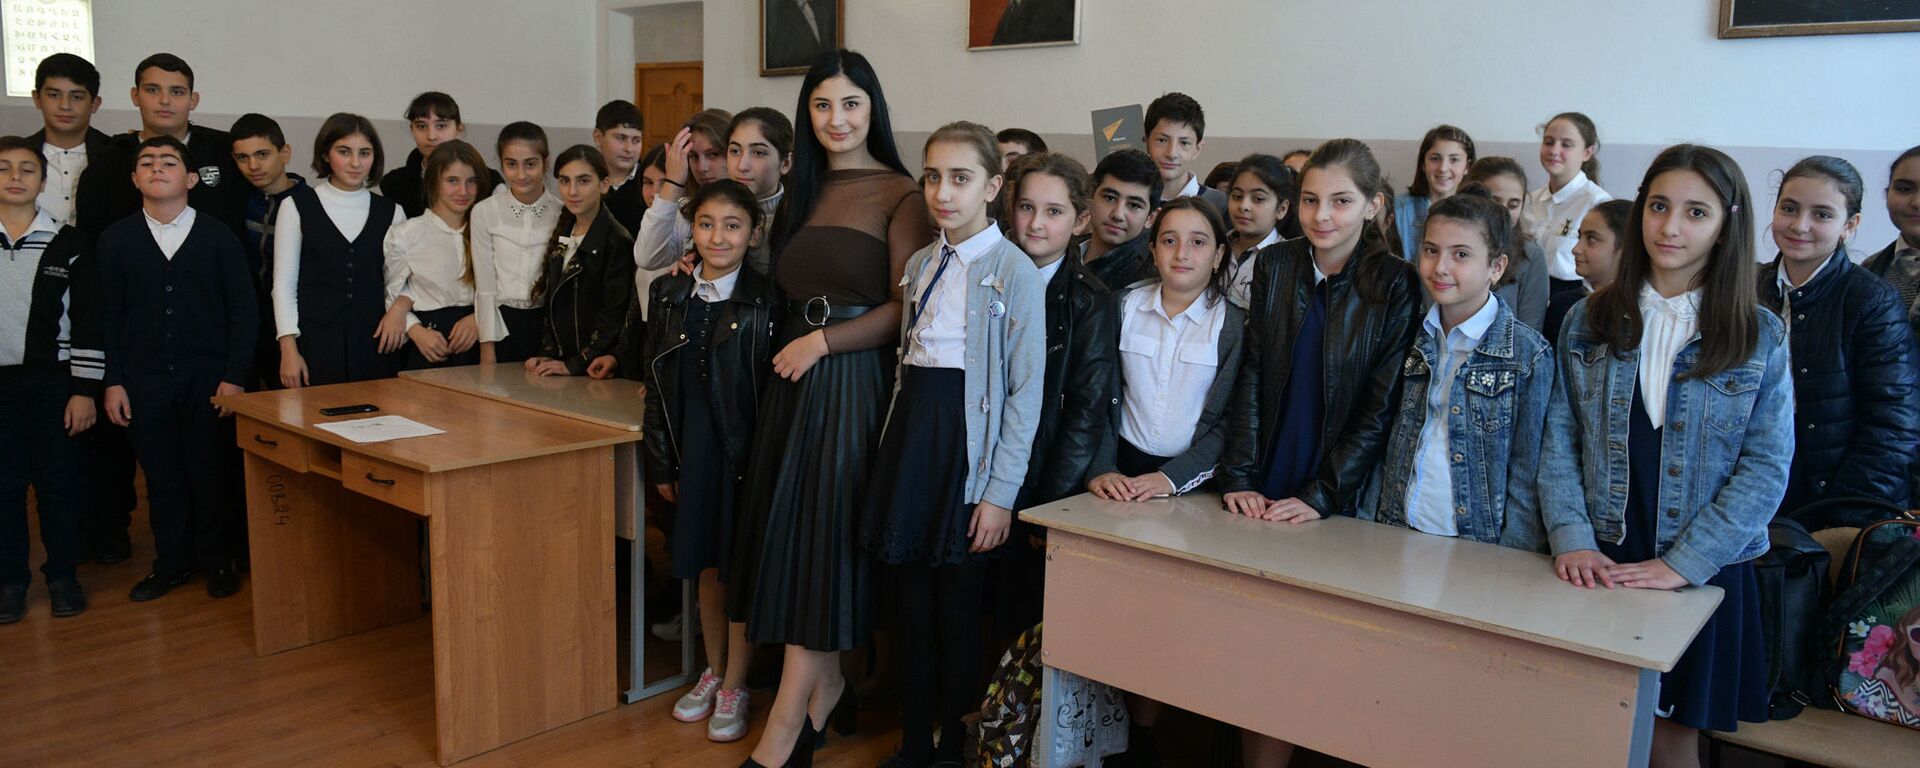  Благотворительный фонда Ашана  провел акцию  Урок добра - Sputnik Абхазия, 1920, 13.11.2019